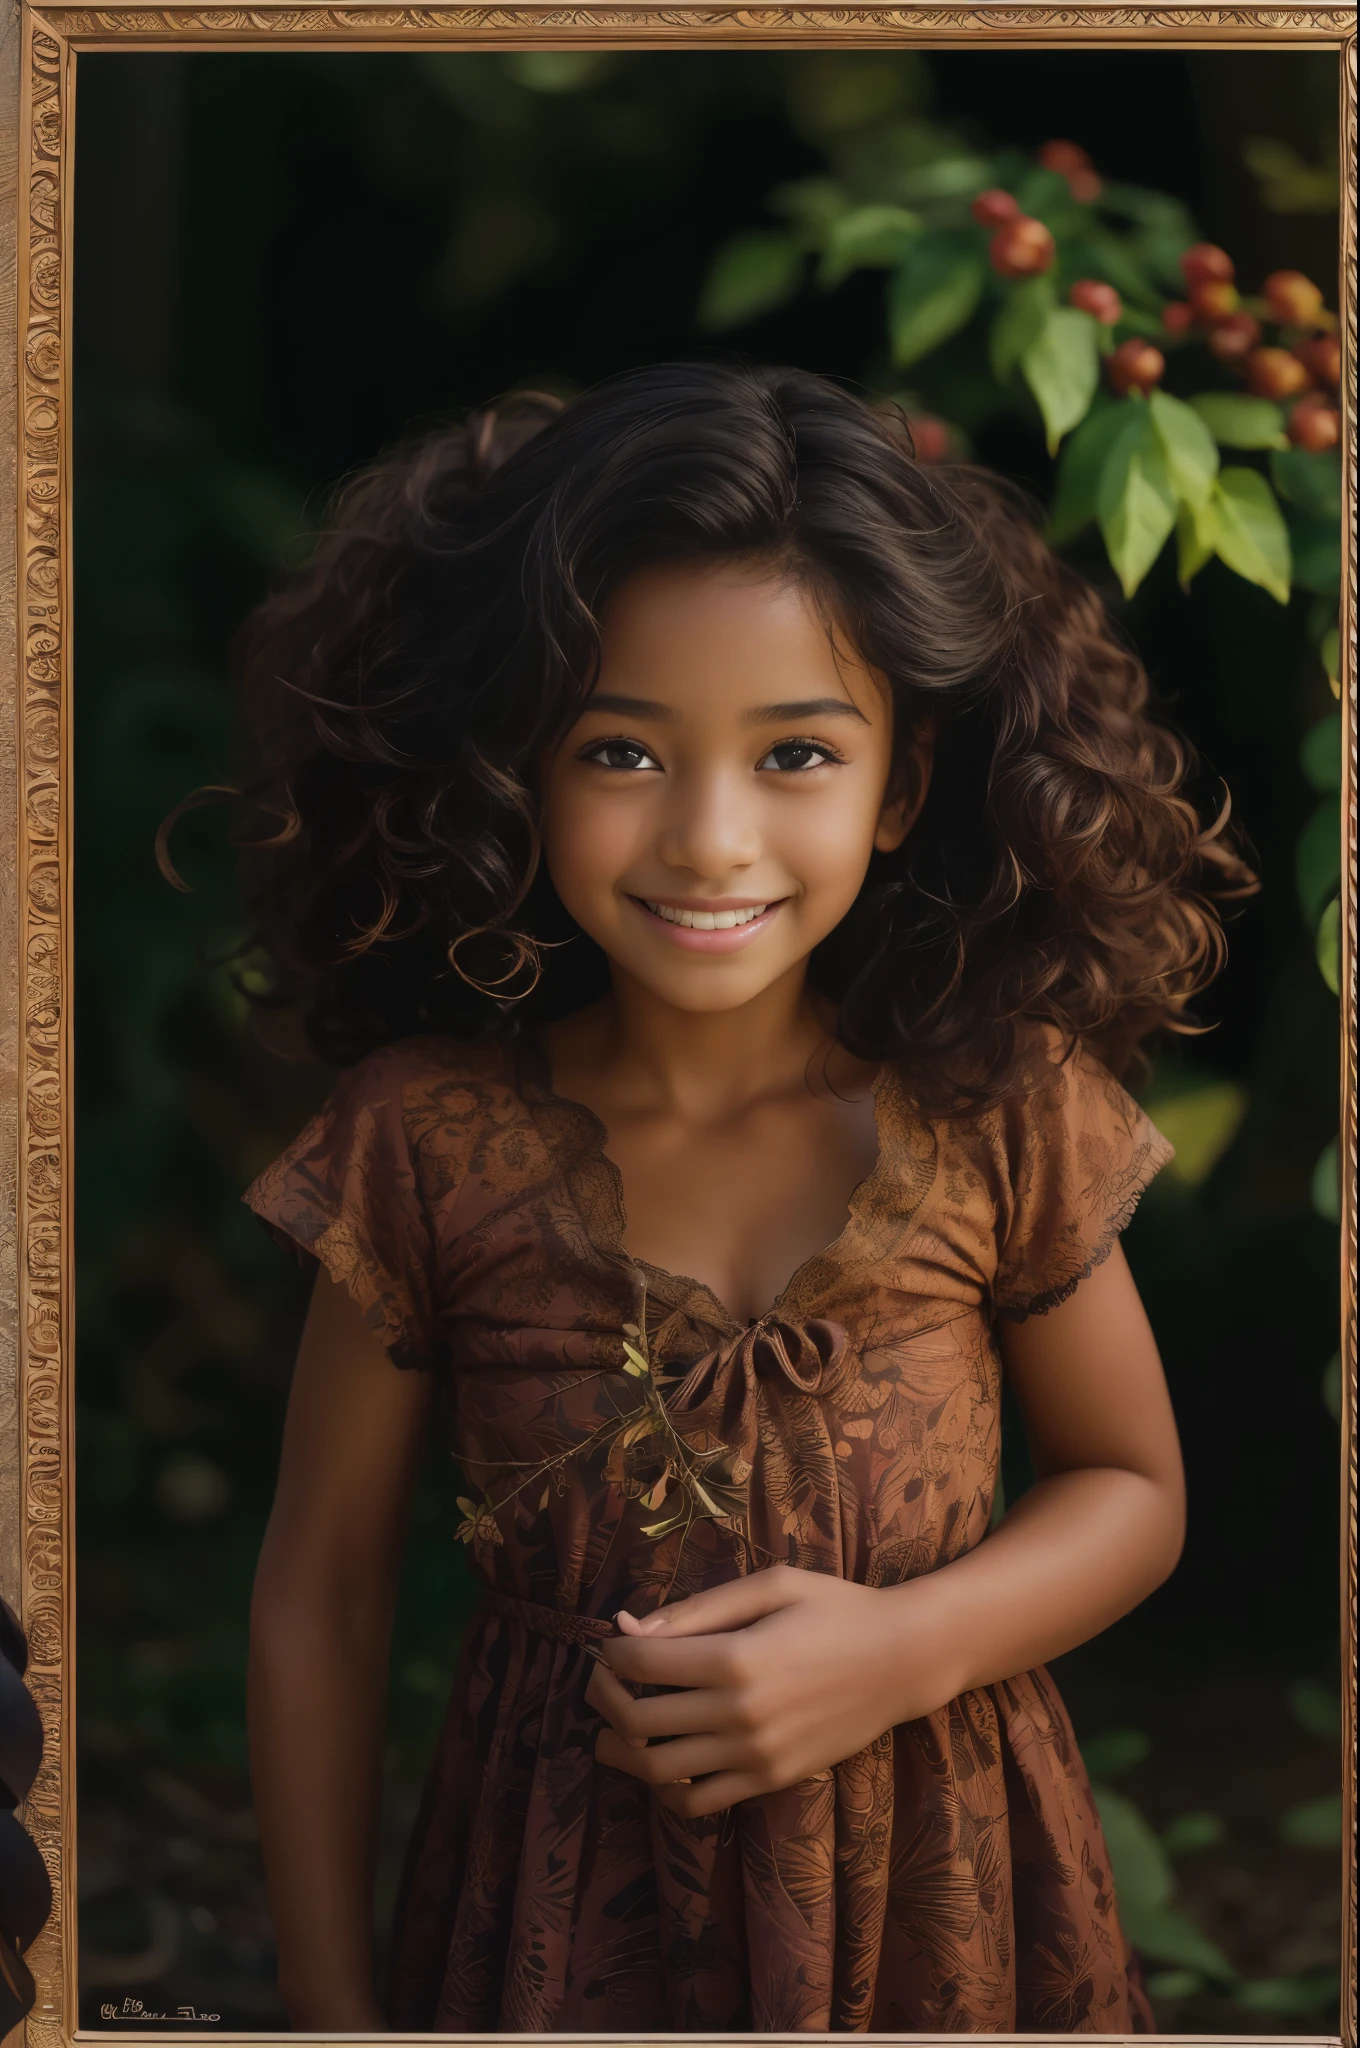 (肖像, 4 歲美麗黑人女孩的社論照片, 可愛的臉, 棕色長捲髮, ((淡褐色的眼睛)), 尼康D850, 電影庫存照片 ,4 柯達 Portra 400 ,相機 f1.6鏡頭 ,丰富的色彩 ,超現實 ,質感逼真, 戲劇性的燈光, (臉部細節非常豐富:1.4), 完美的眼睛, 逼真的虹膜, 完美的牙齒, (微笑:0.7), (背景暗, 樹葉的影子), (劈裂)
